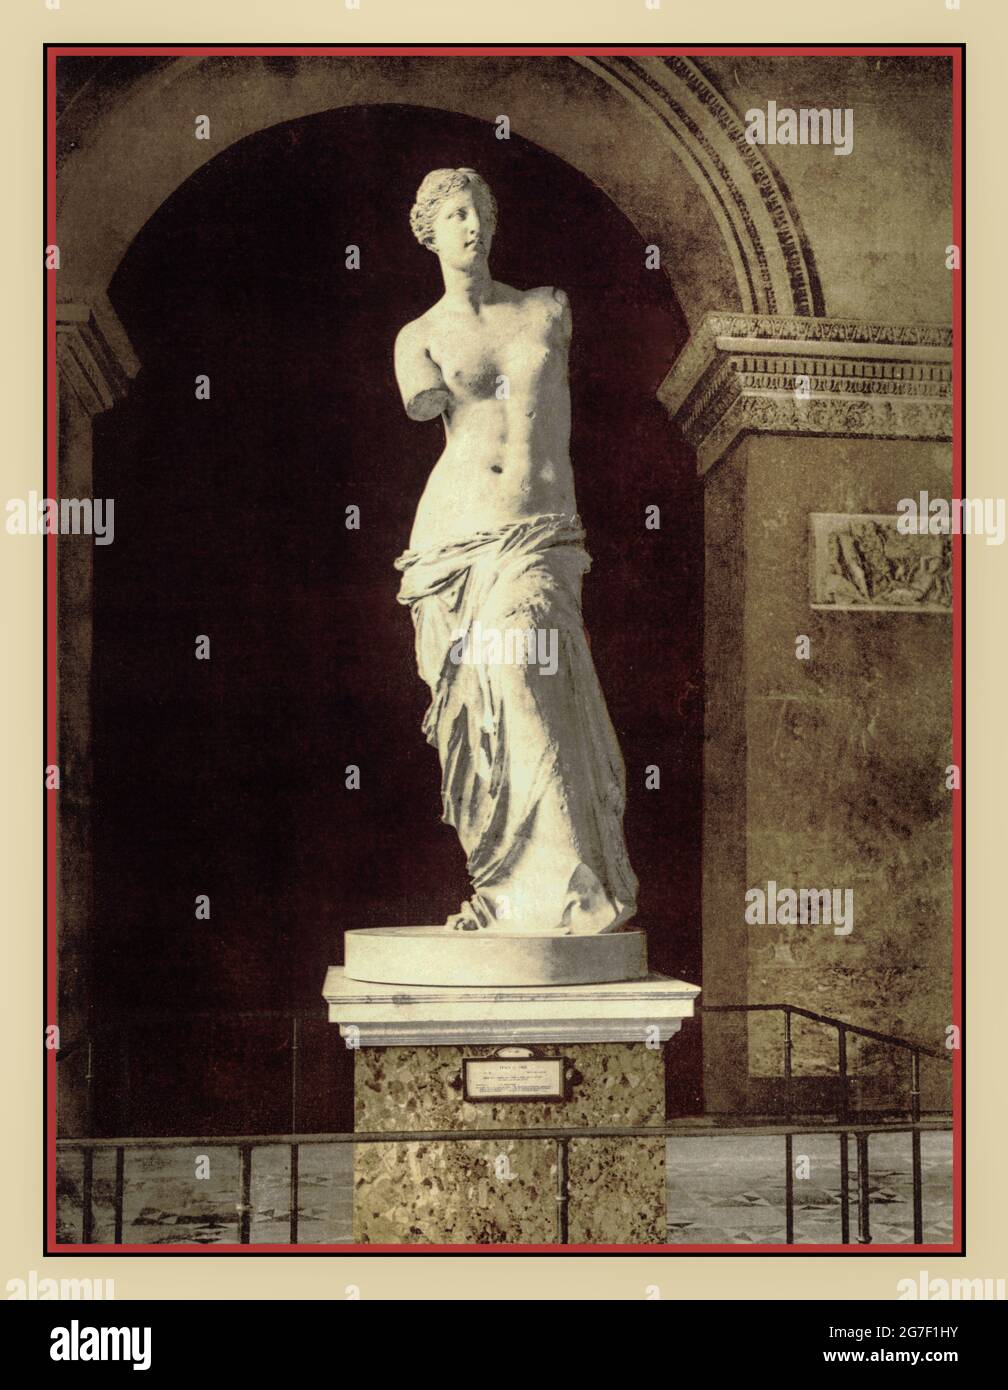 1900: Archiv der Venus de Milo-Statue Fotochrombild [der Louvre, die Venus de Milo, Paris, Frankreich] 'Aphrodite de Milos' Fotochromdrucke--Farbe-- 1890-1900.die Venus von Milo wird seit kurz nach der Wiederentdeckung der Statue auf der griechischen Insel Milos im Jahr 1820 im Louvre in Paris prominent ausgestellt.Es wird angenommen, dass die Statue Aphrodite, die griechische Göttin der Liebe und Schönheit, darstellt und den Namen Venus trägt, Stockfoto